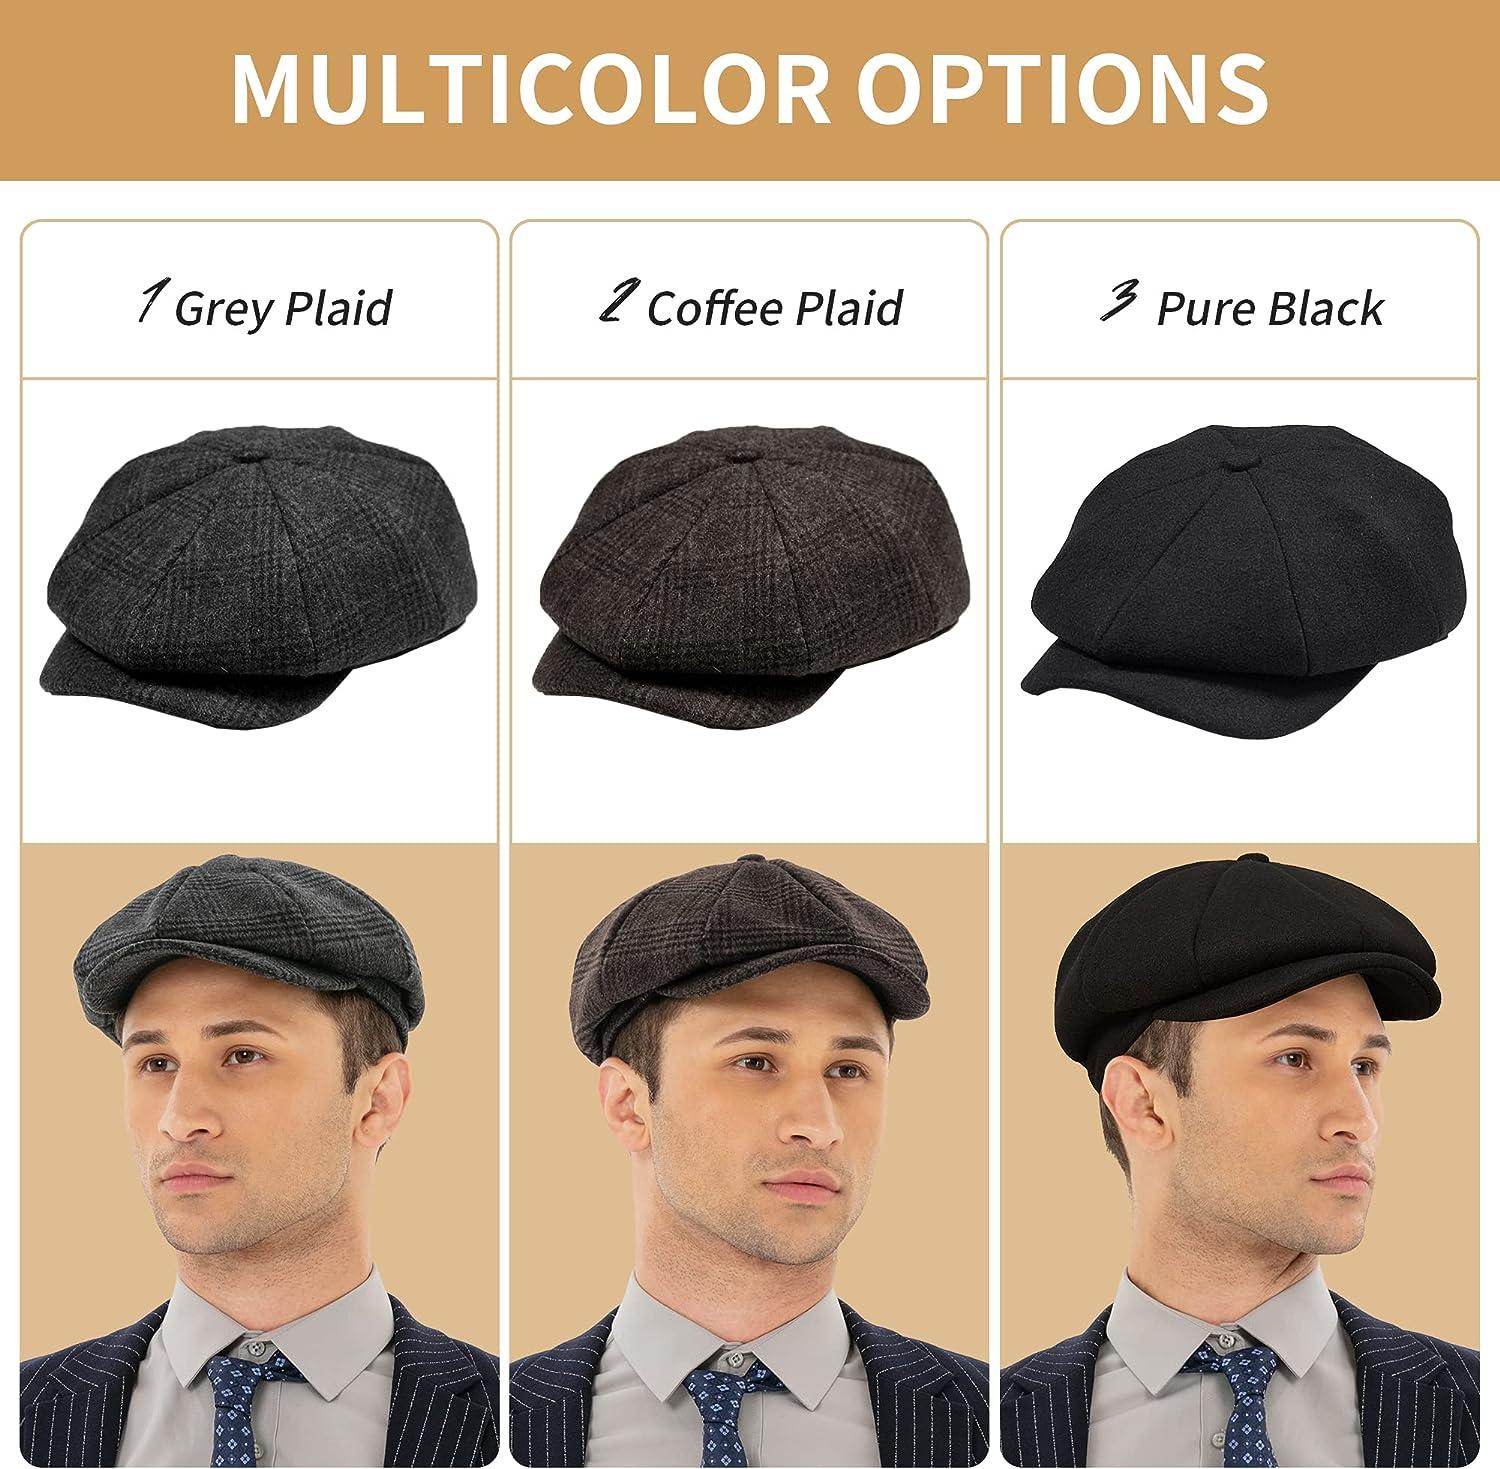 Flat Caps for Men's, Newsboy Caps